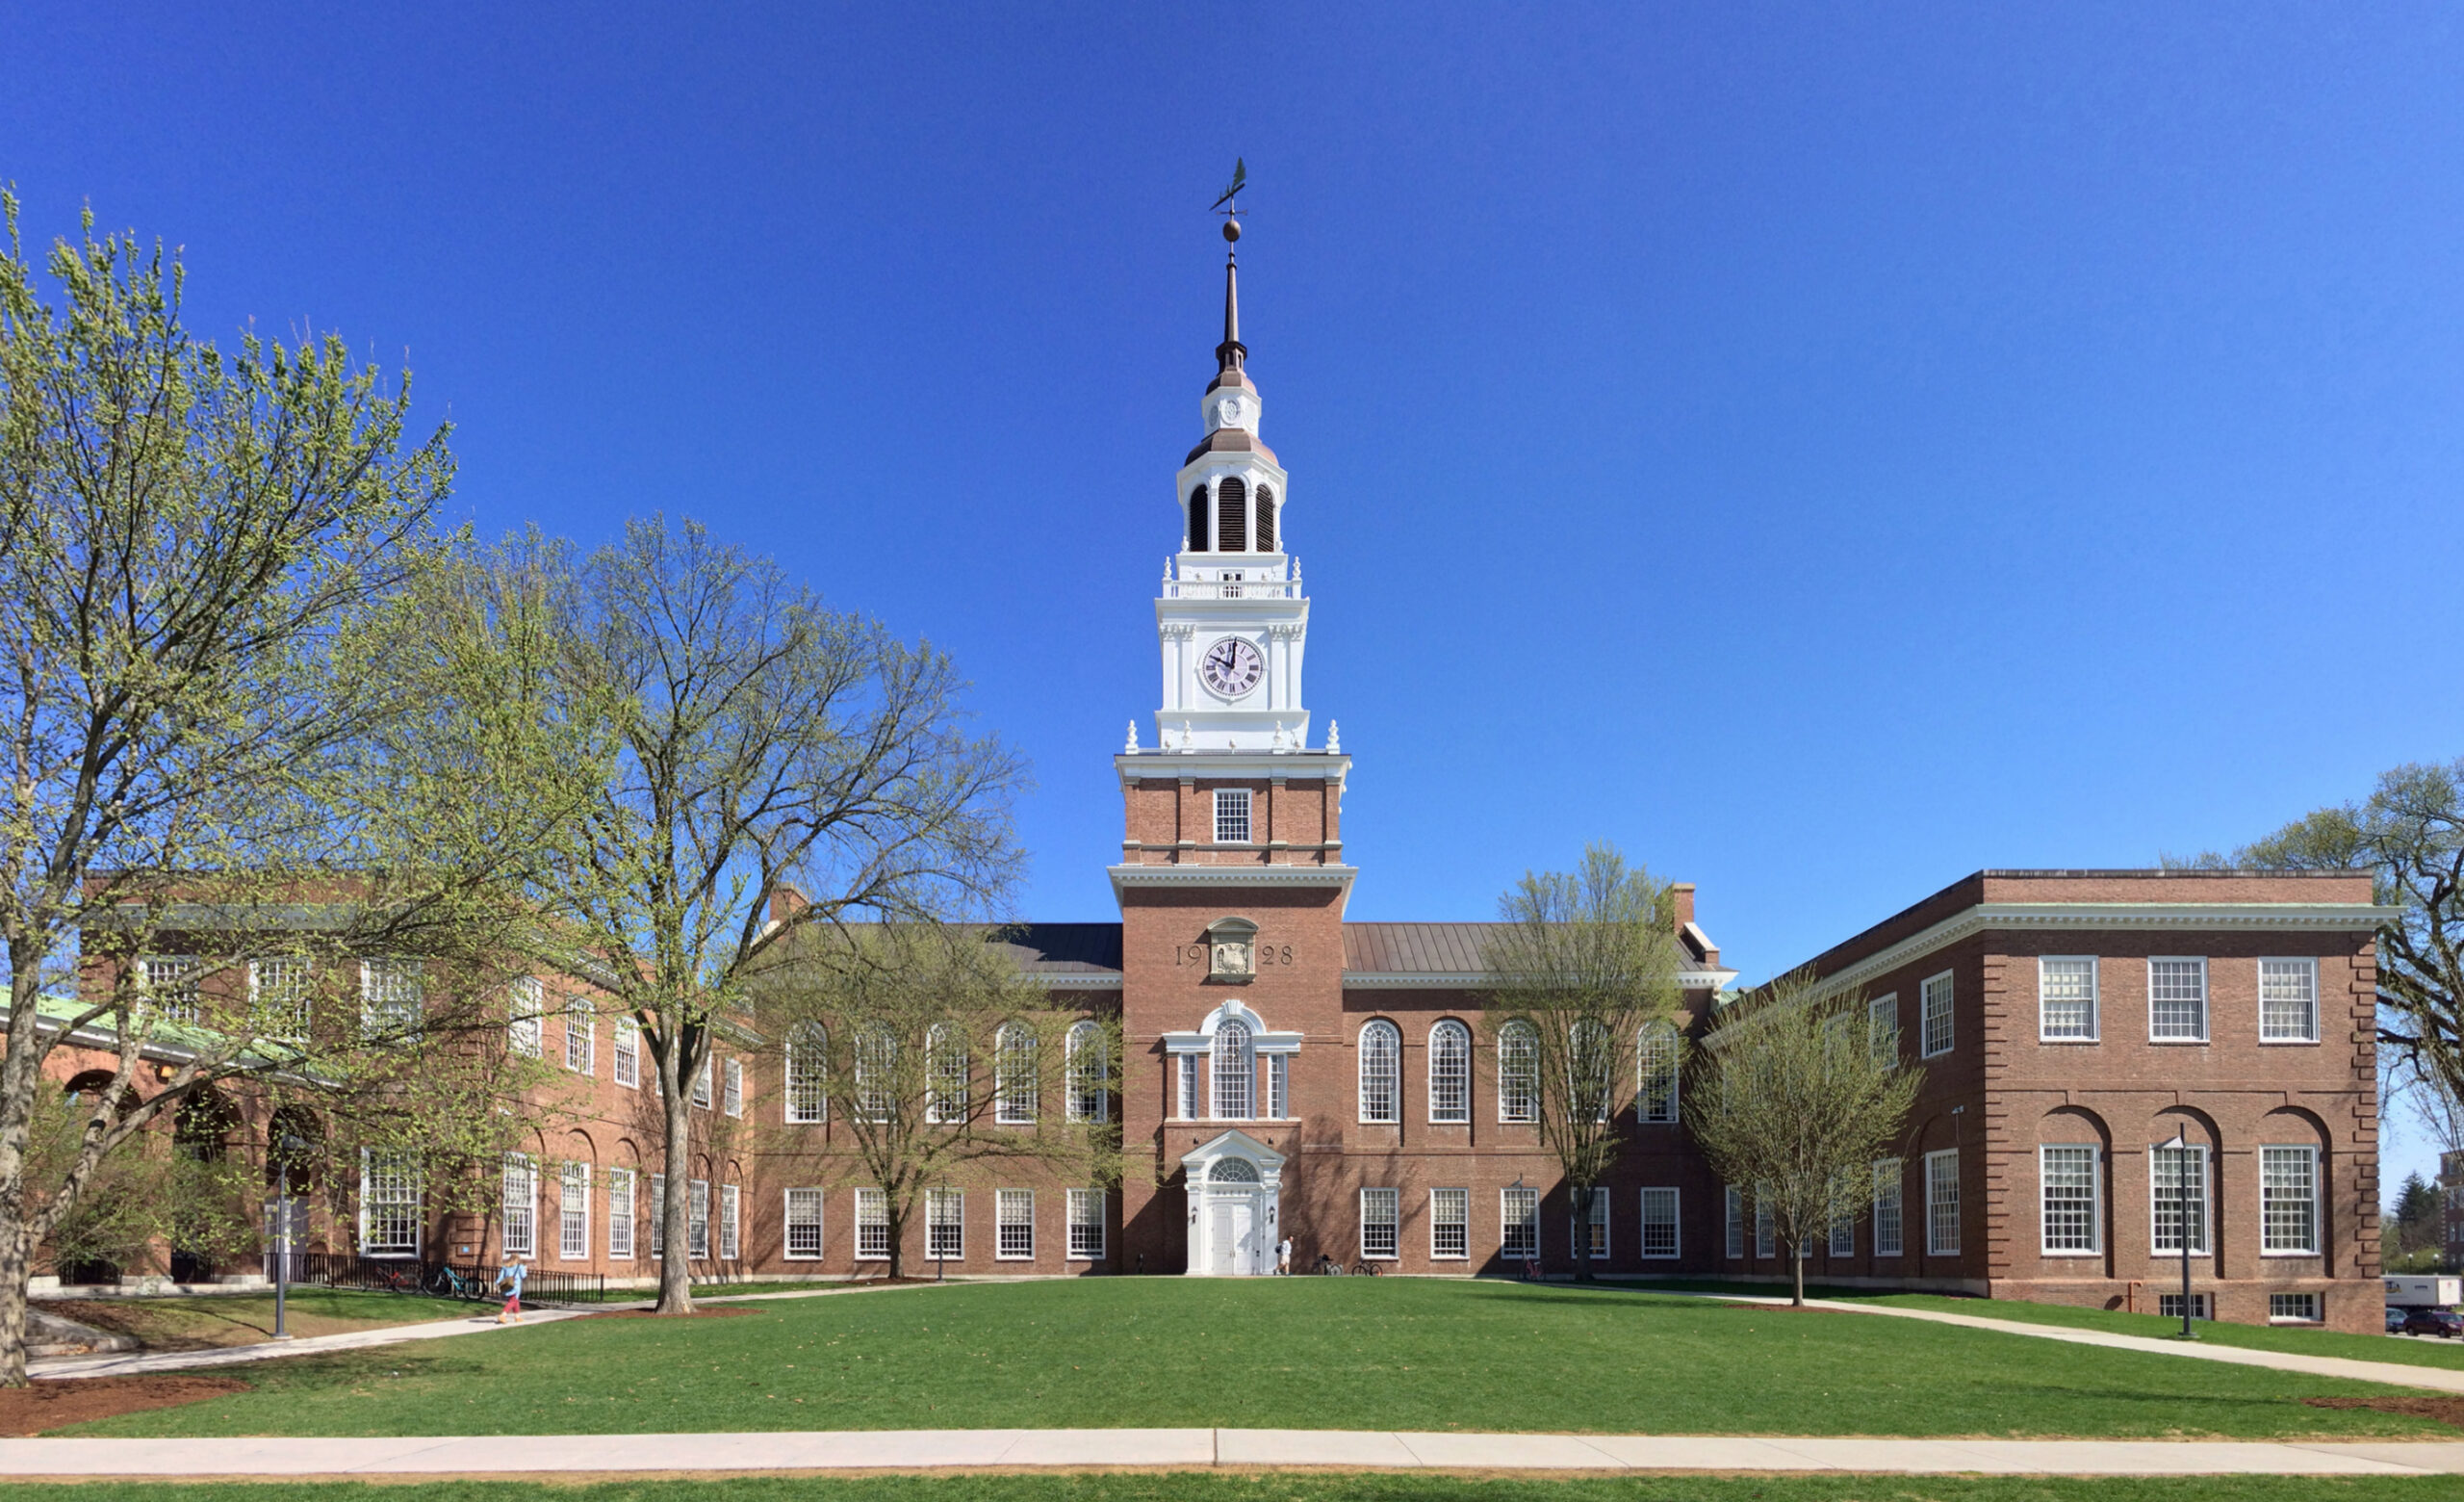 Por dentro do Dartmouth College: a Ivy League menos conhecida